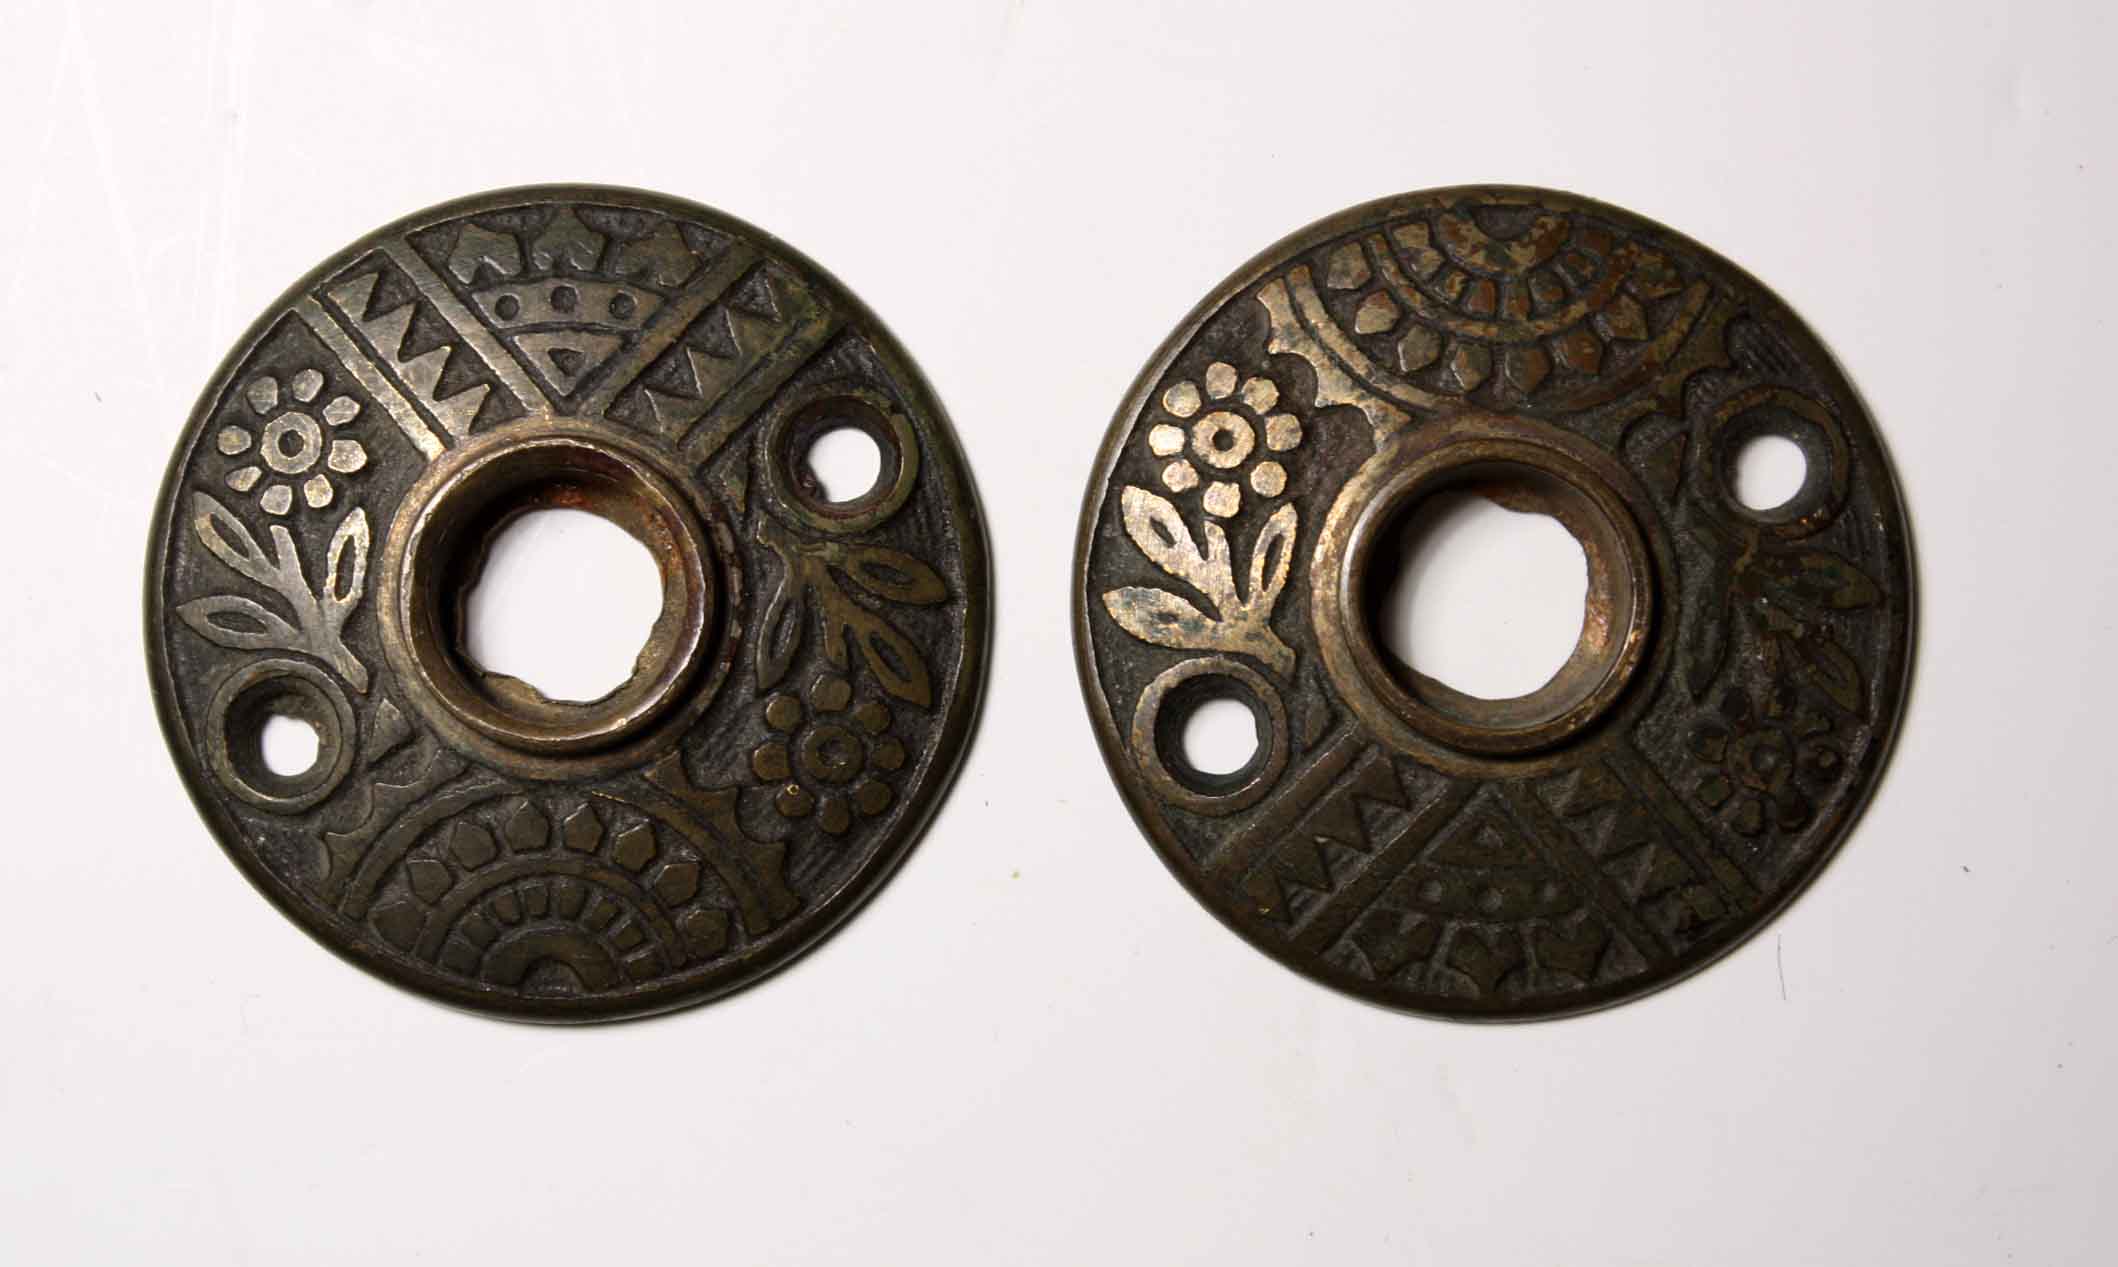 SOLD Delightful Pair of Antique Cast Bronze Rosettes, c. 1880-0